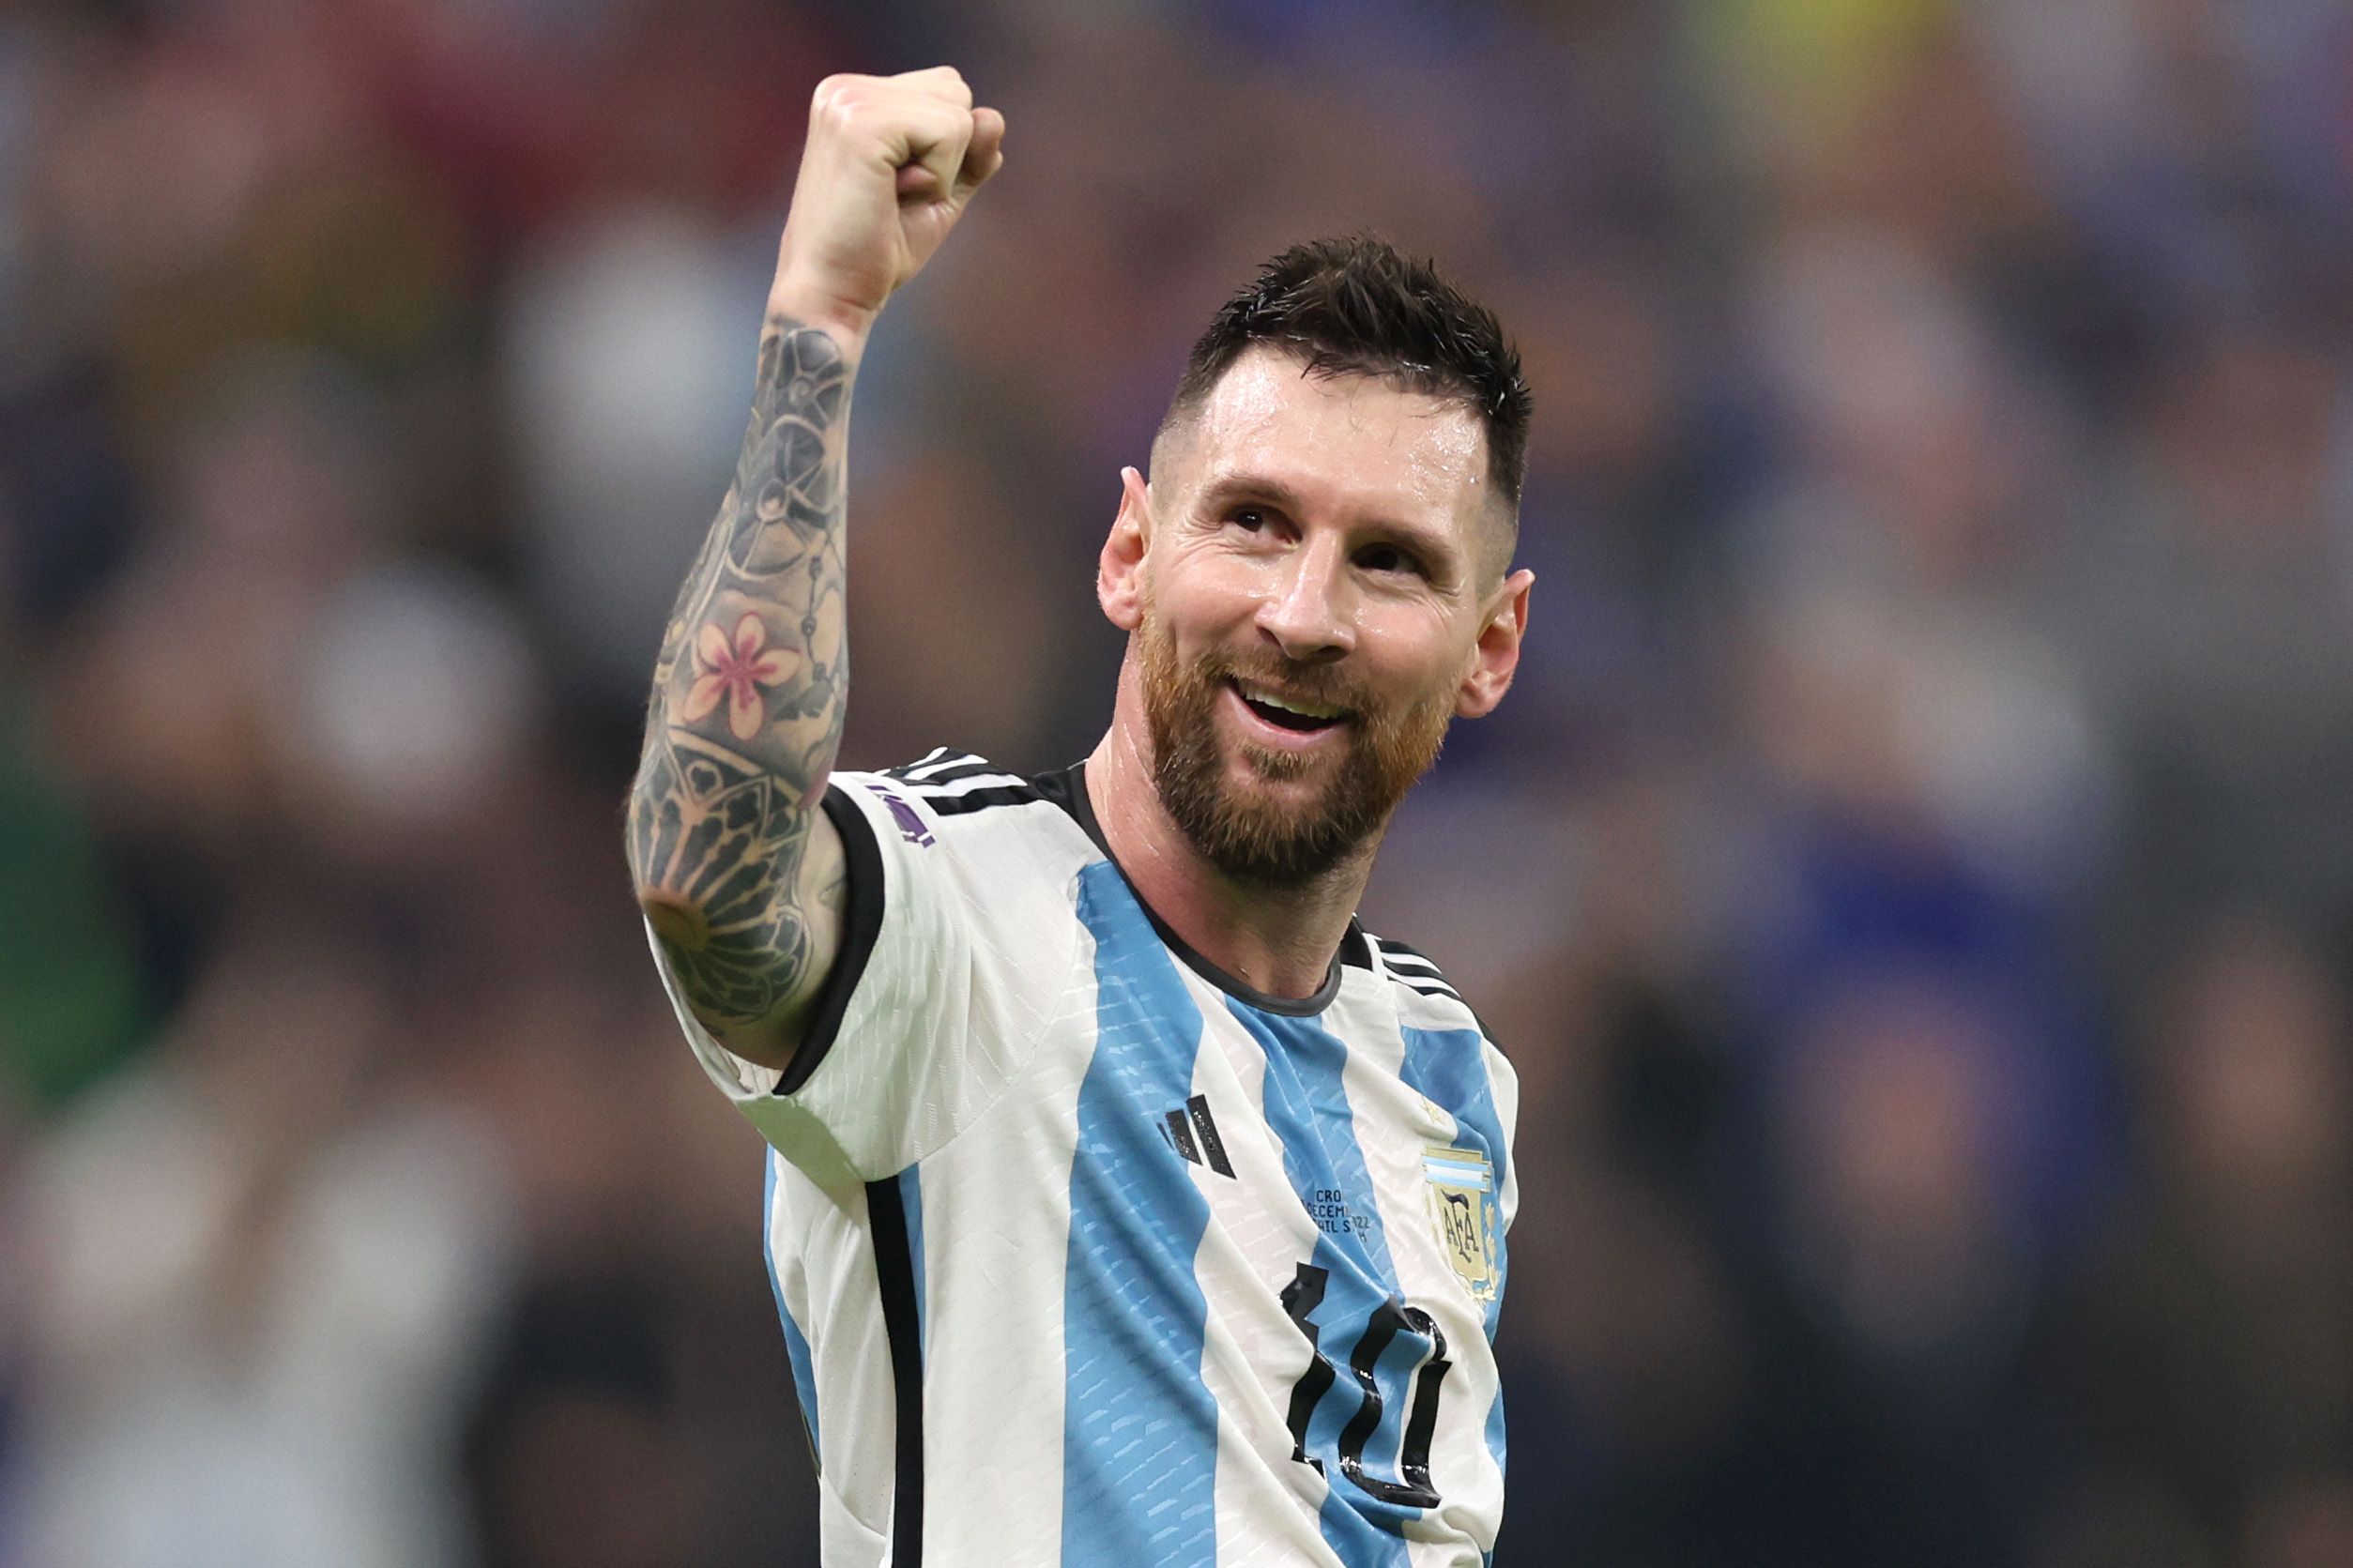 Danh hiệu của Messi: Giải thưởng danh giá “FIFA The Best”